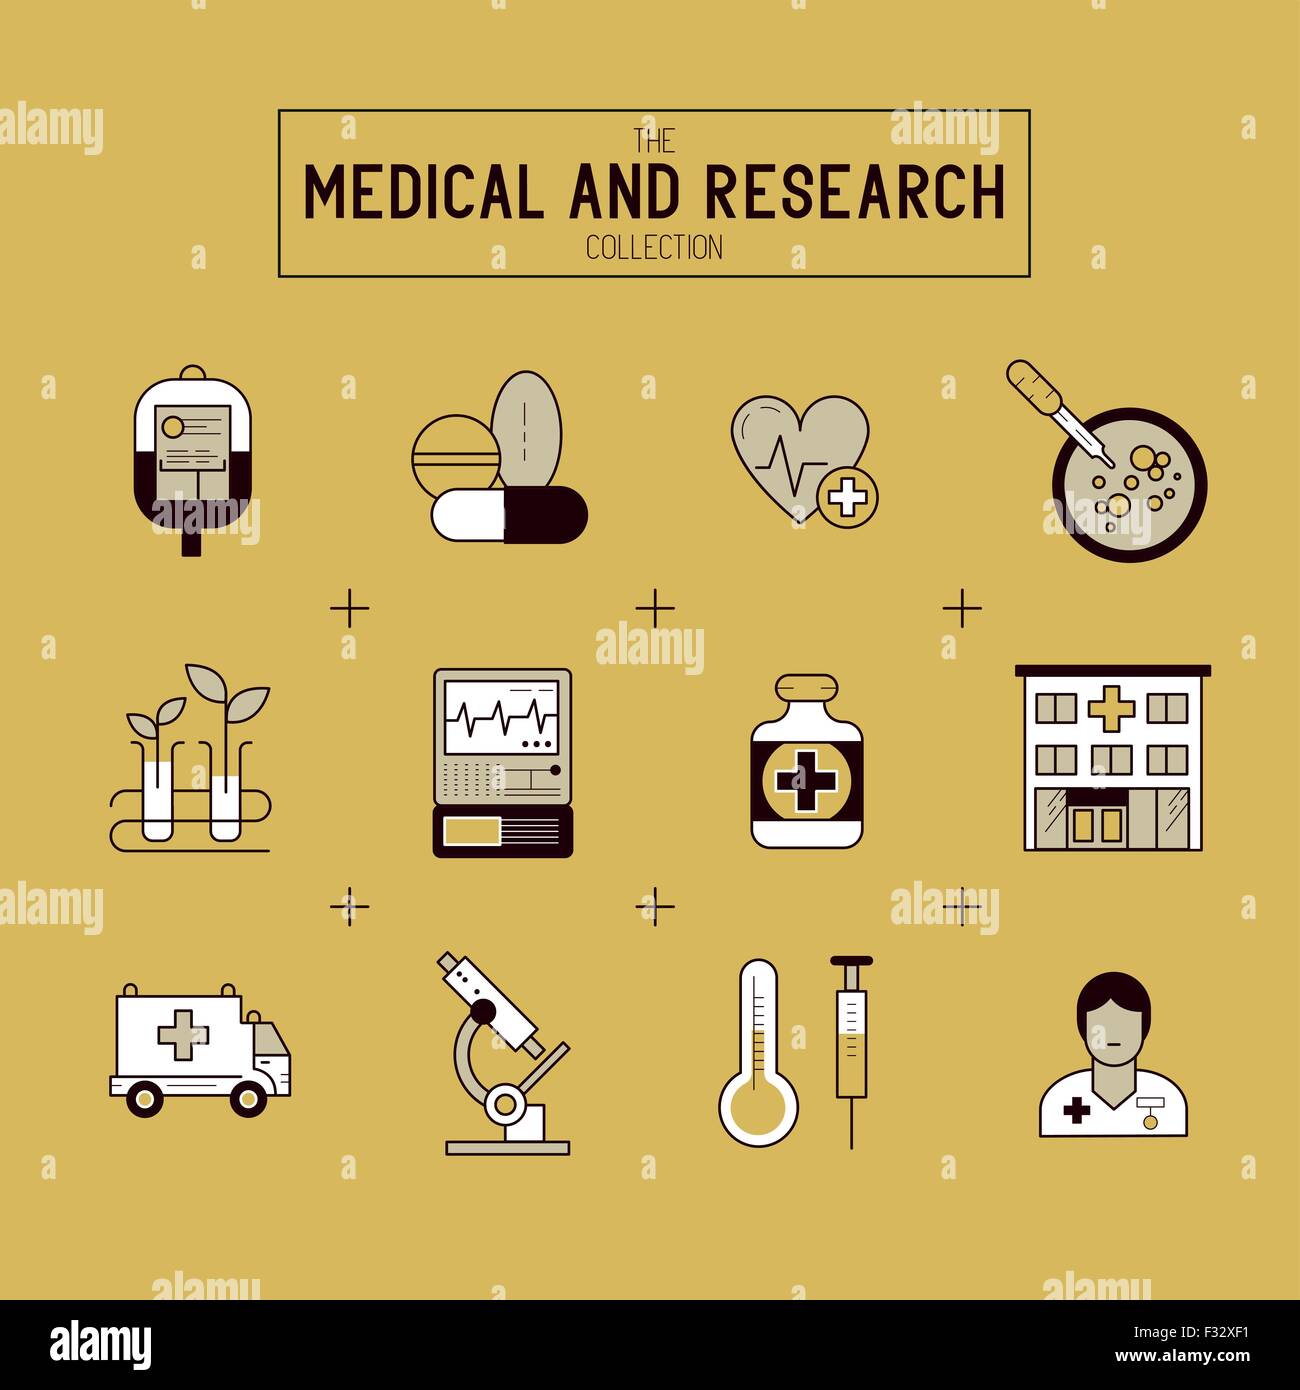 Médecine et Recherche Icon Set. Une collection d'icônes médicale y compris l'or, de l'équipement, les gens et les outils médicaux. Illustration de Vecteur